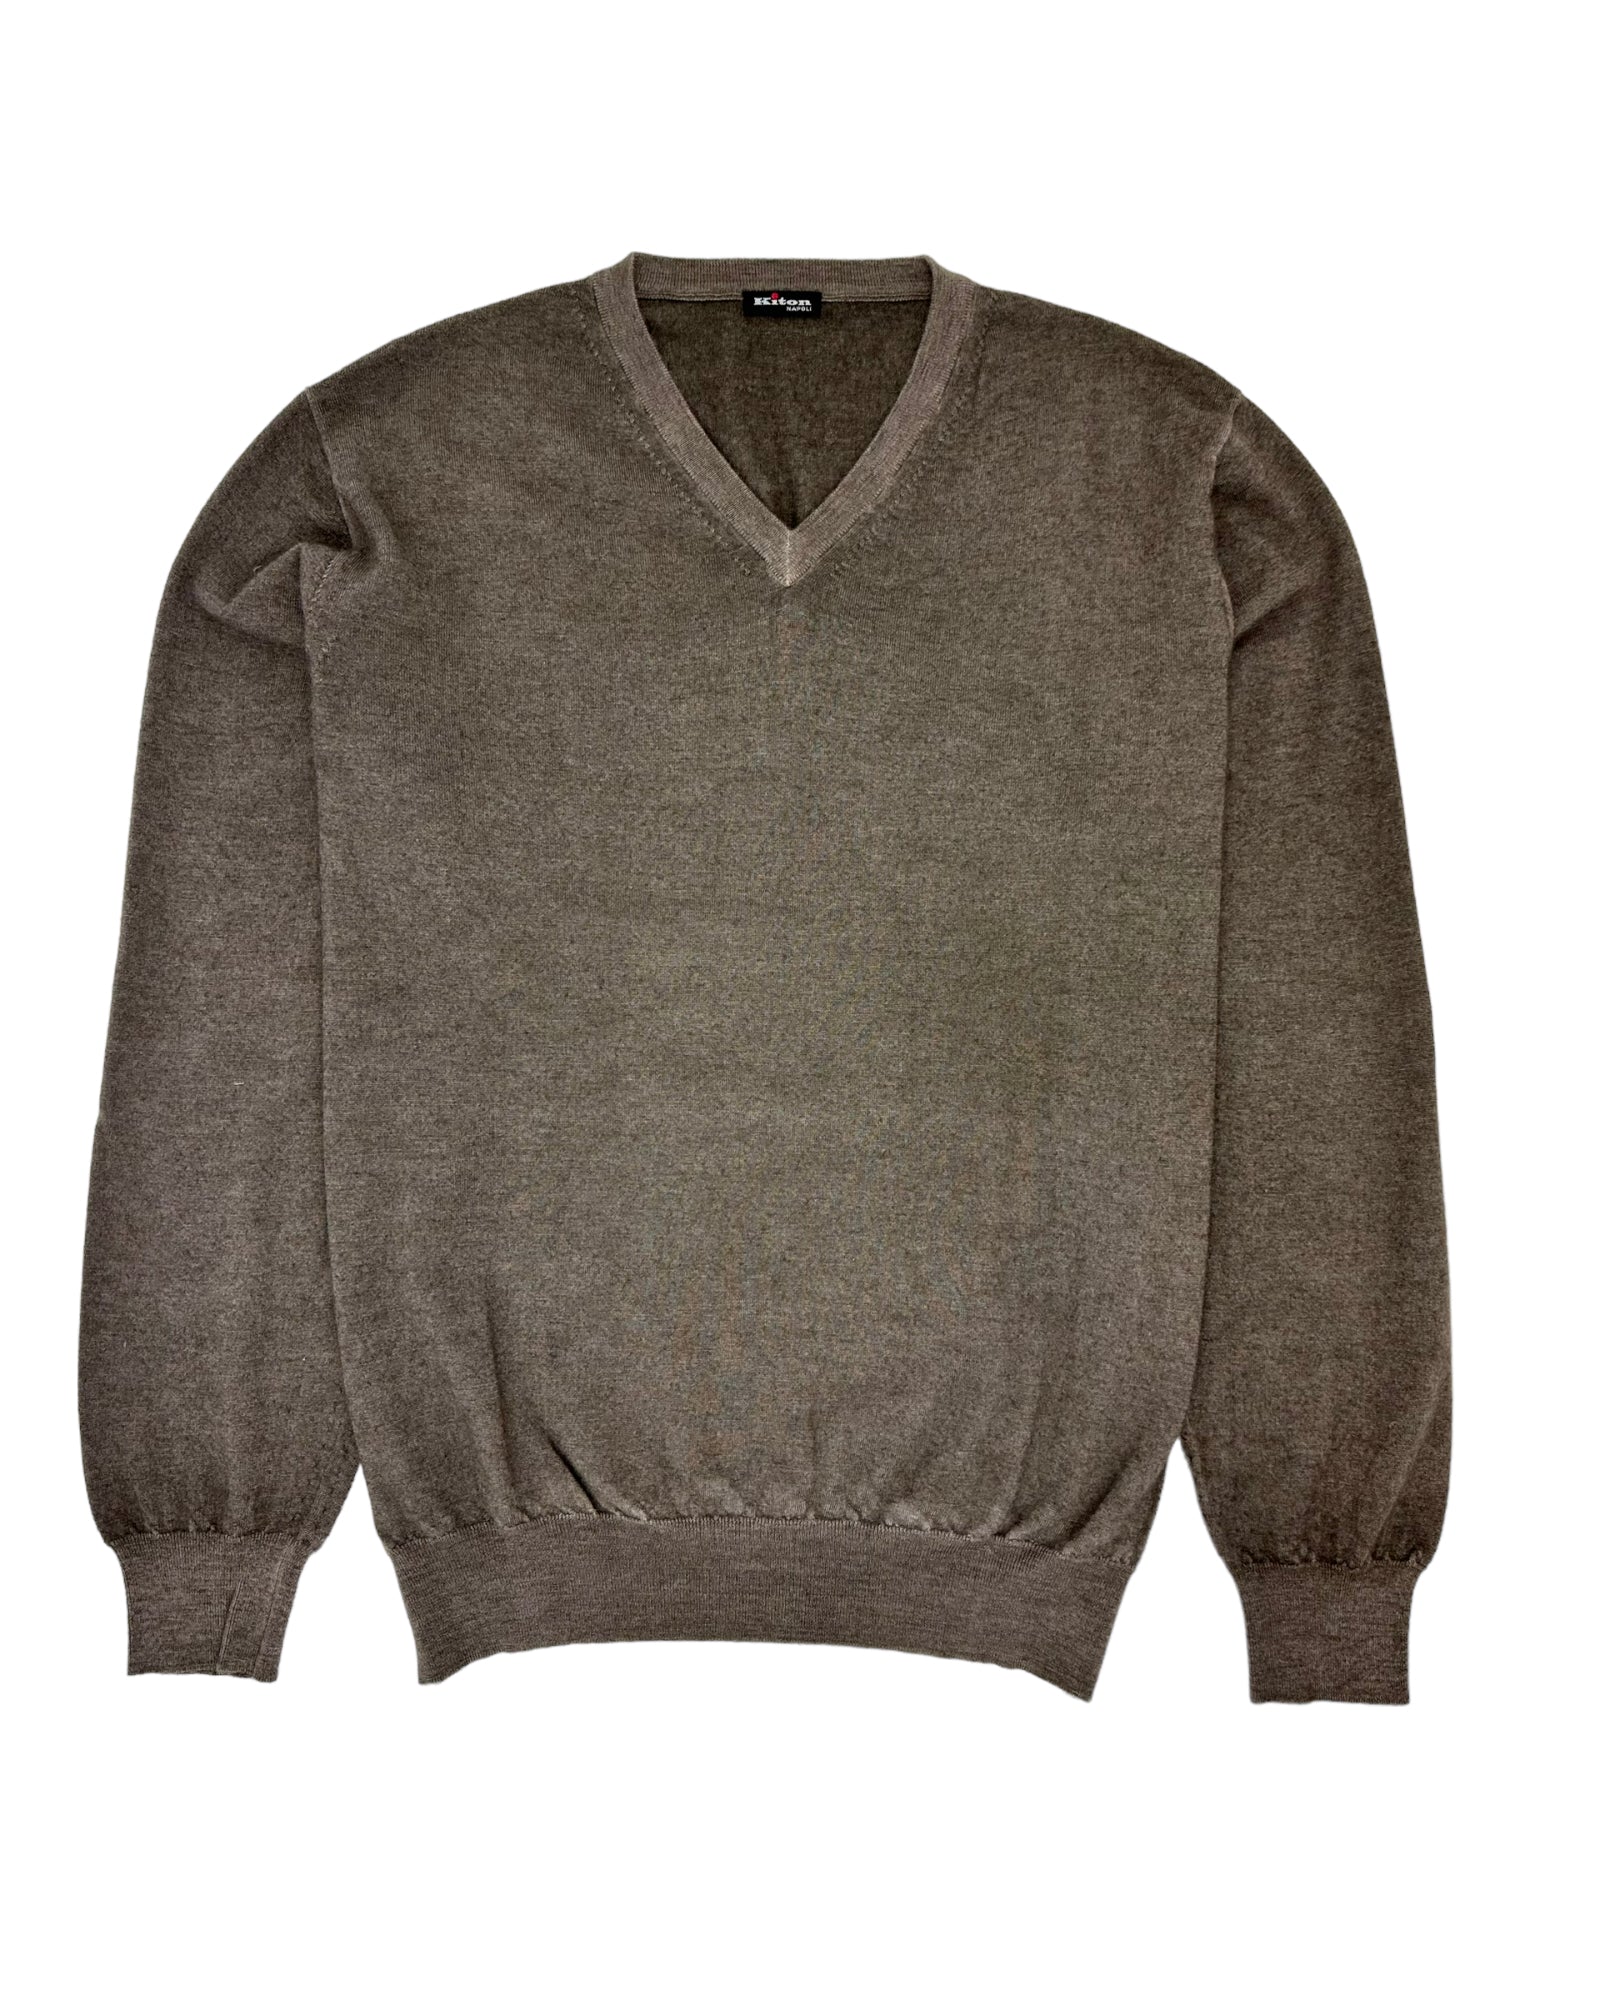 Kiton Thick Knit Cashmere Sweater